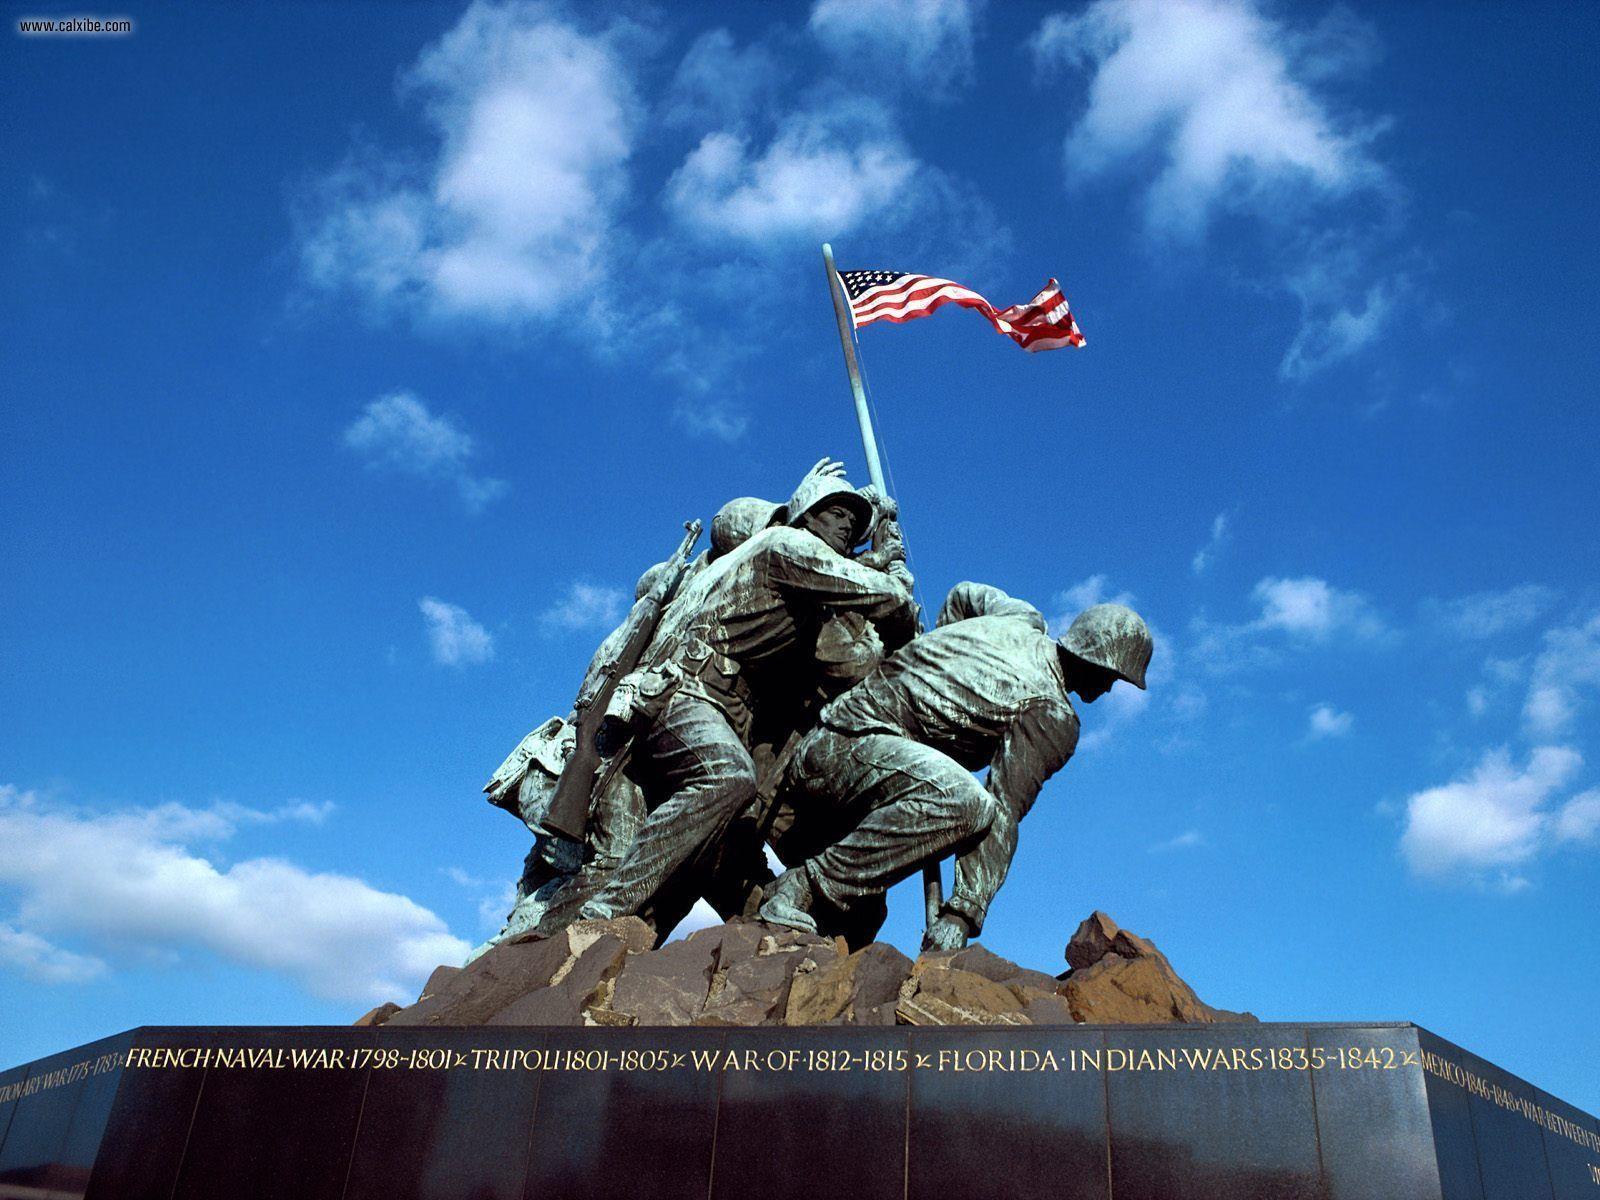 Iwo Jima Memorial Wallpaper Image & Picture